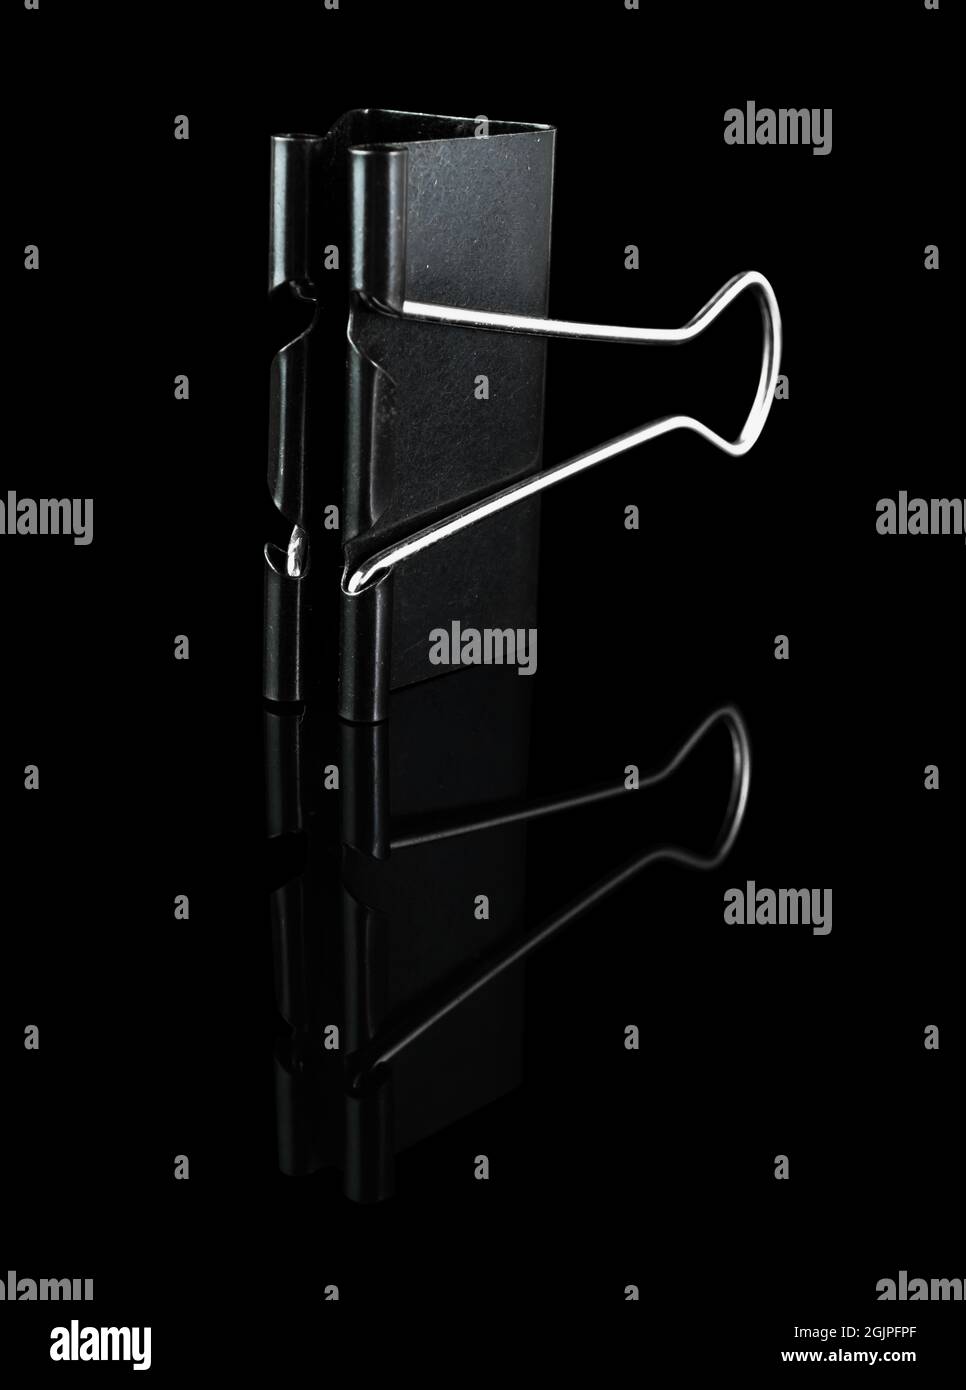 Graffetta metallica, Binder, nera, su sfondo nero, con riflessi Foto Stock